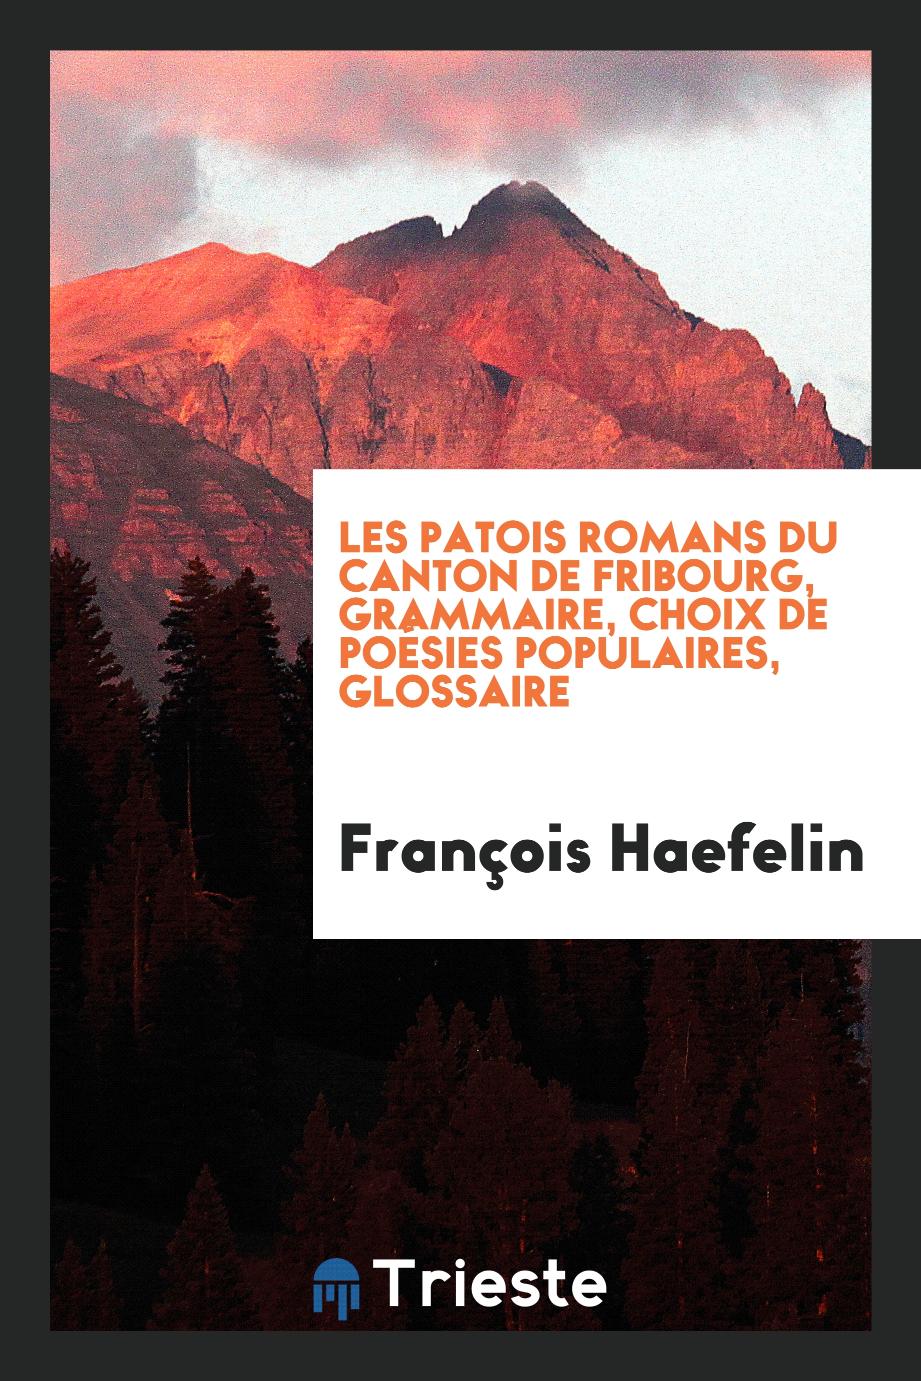 Les patois romans du Canton de Fribourg, Grammaire, choix de poésies populaires, glossaire